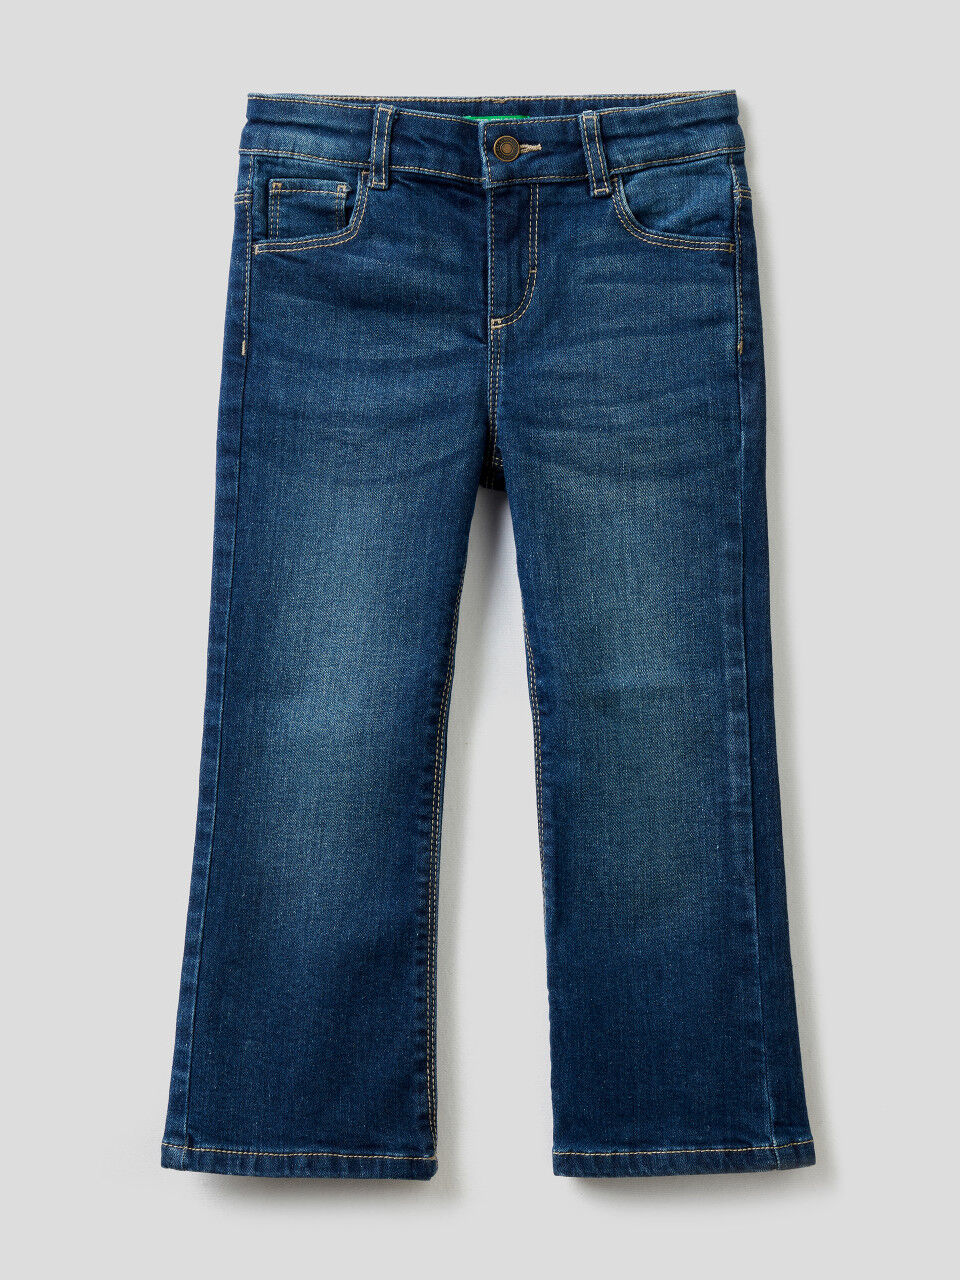 Five pocket flared jeans